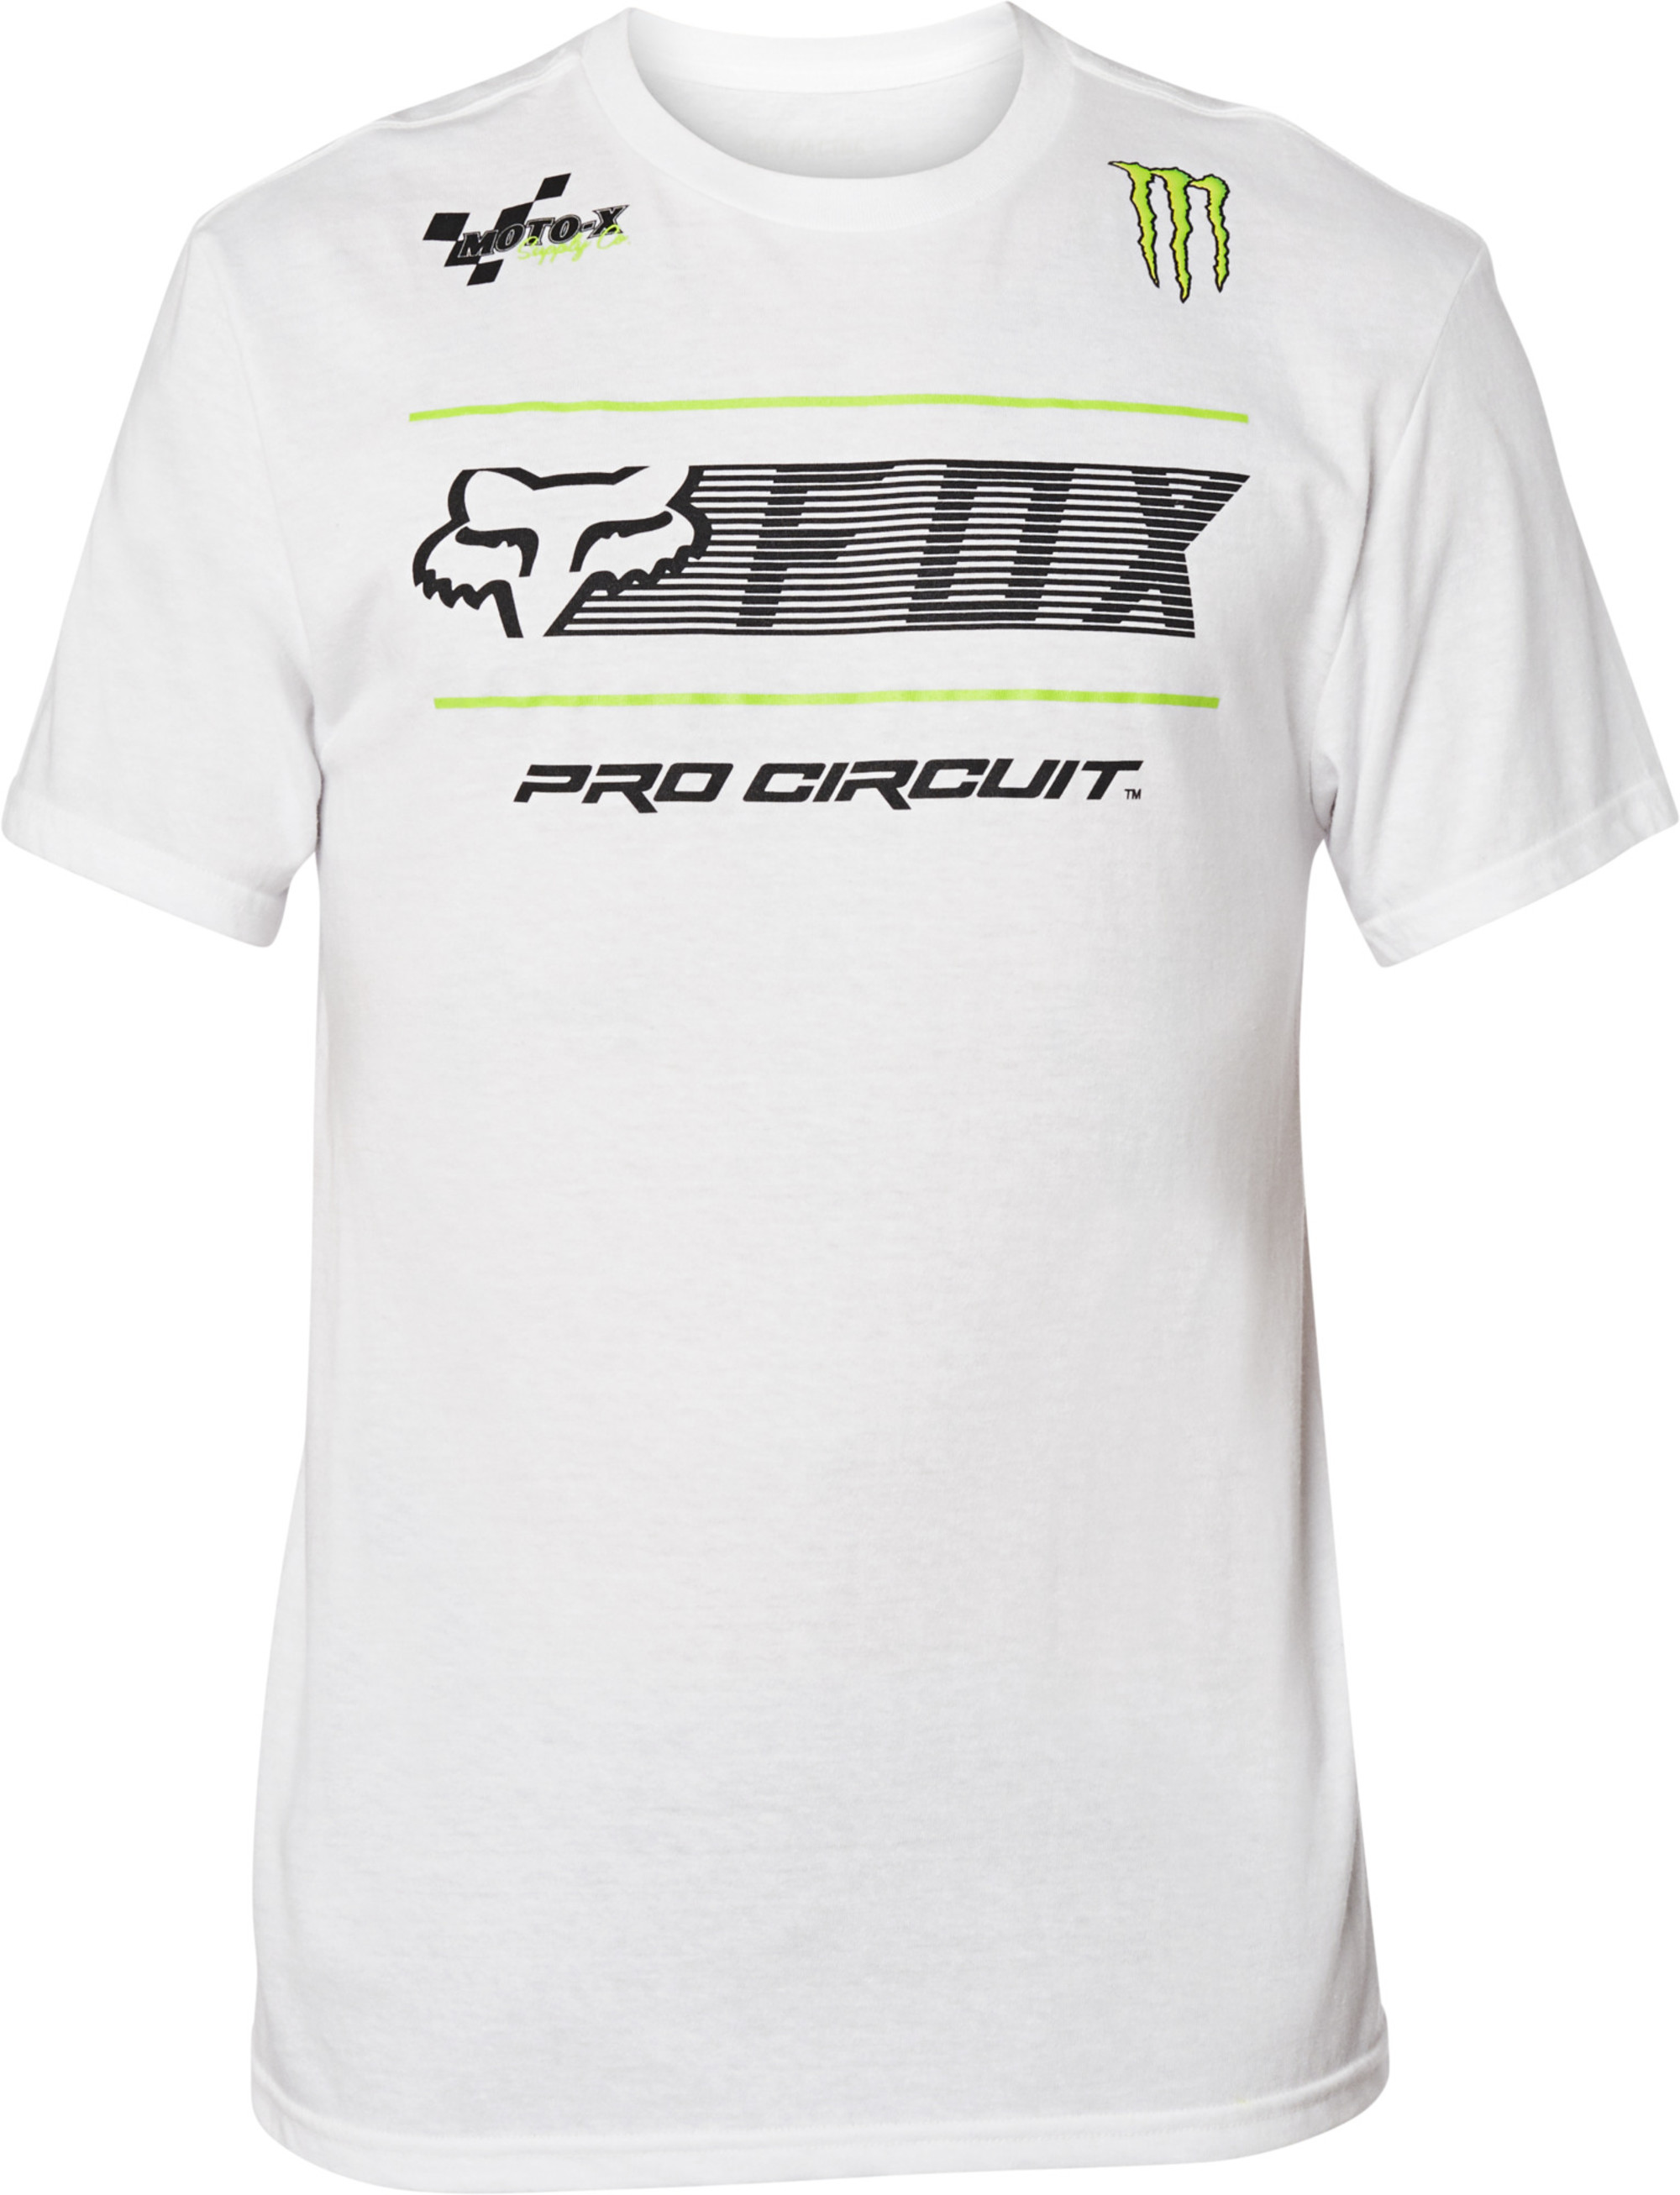 mode hommes chandails t-shirts par fox racing men pro circuit